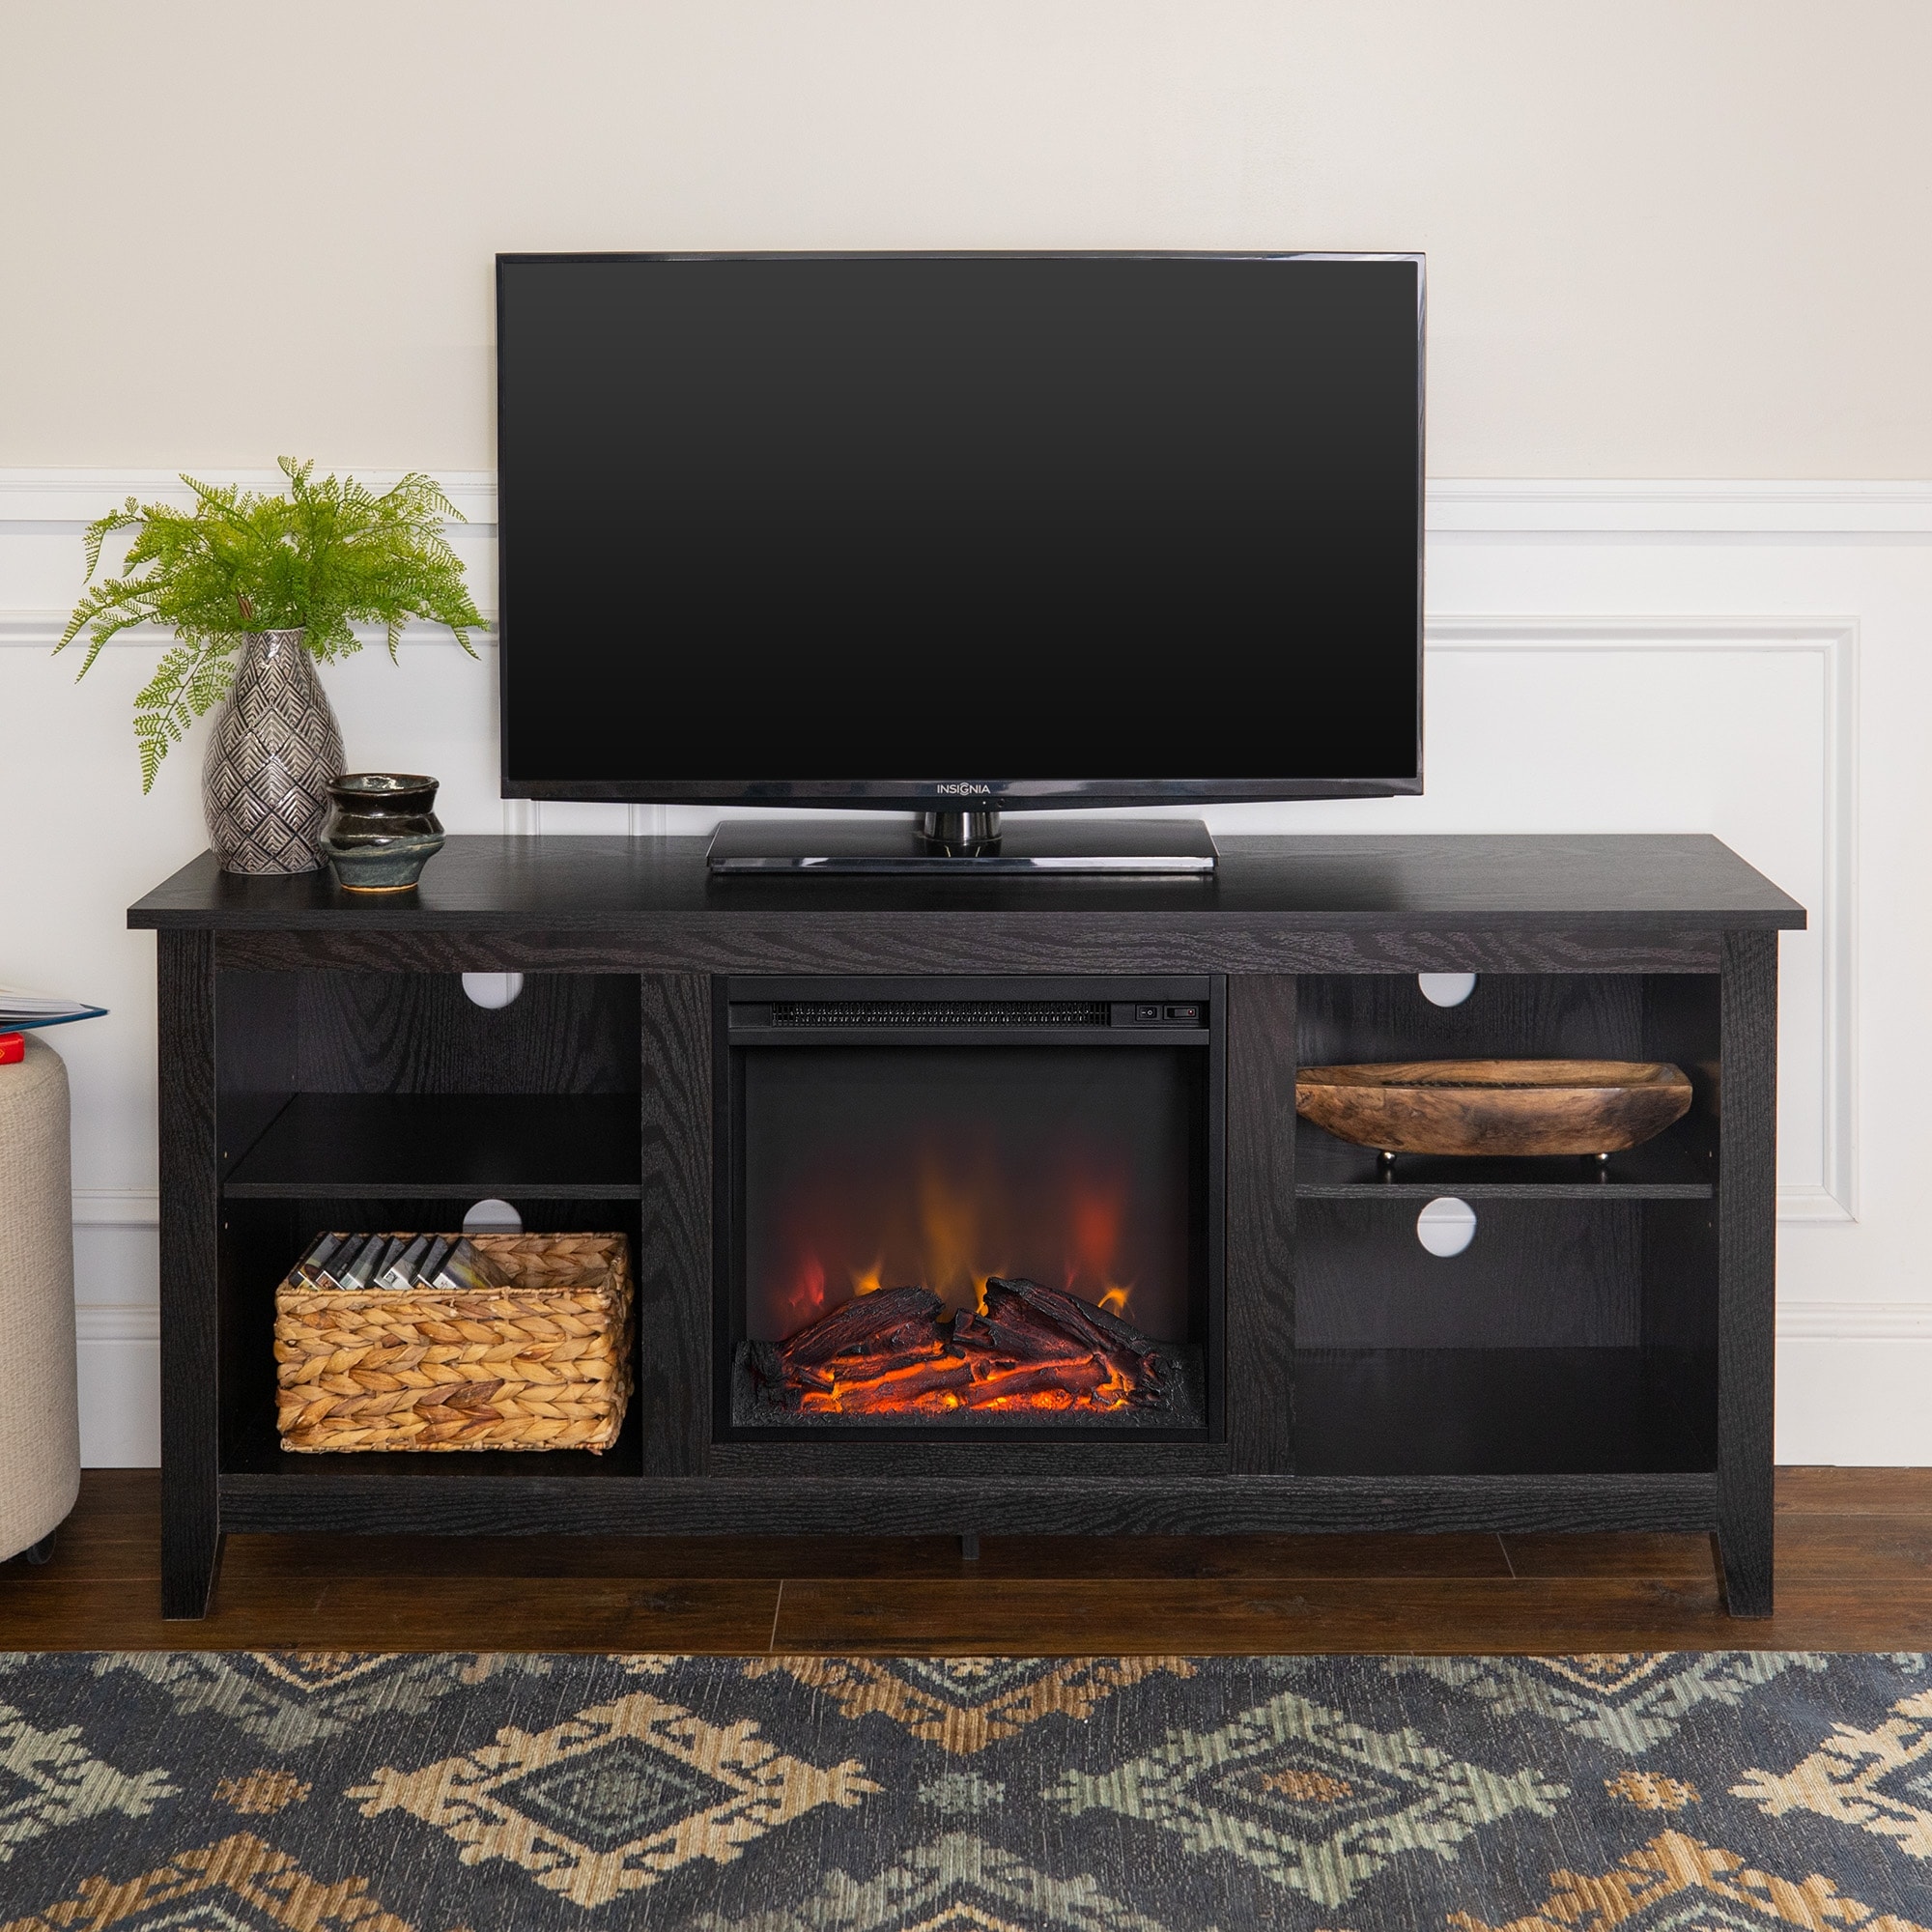 Middlebrook Designs Middlebrook Roosevelt 58-inch Fireplace TV Stand